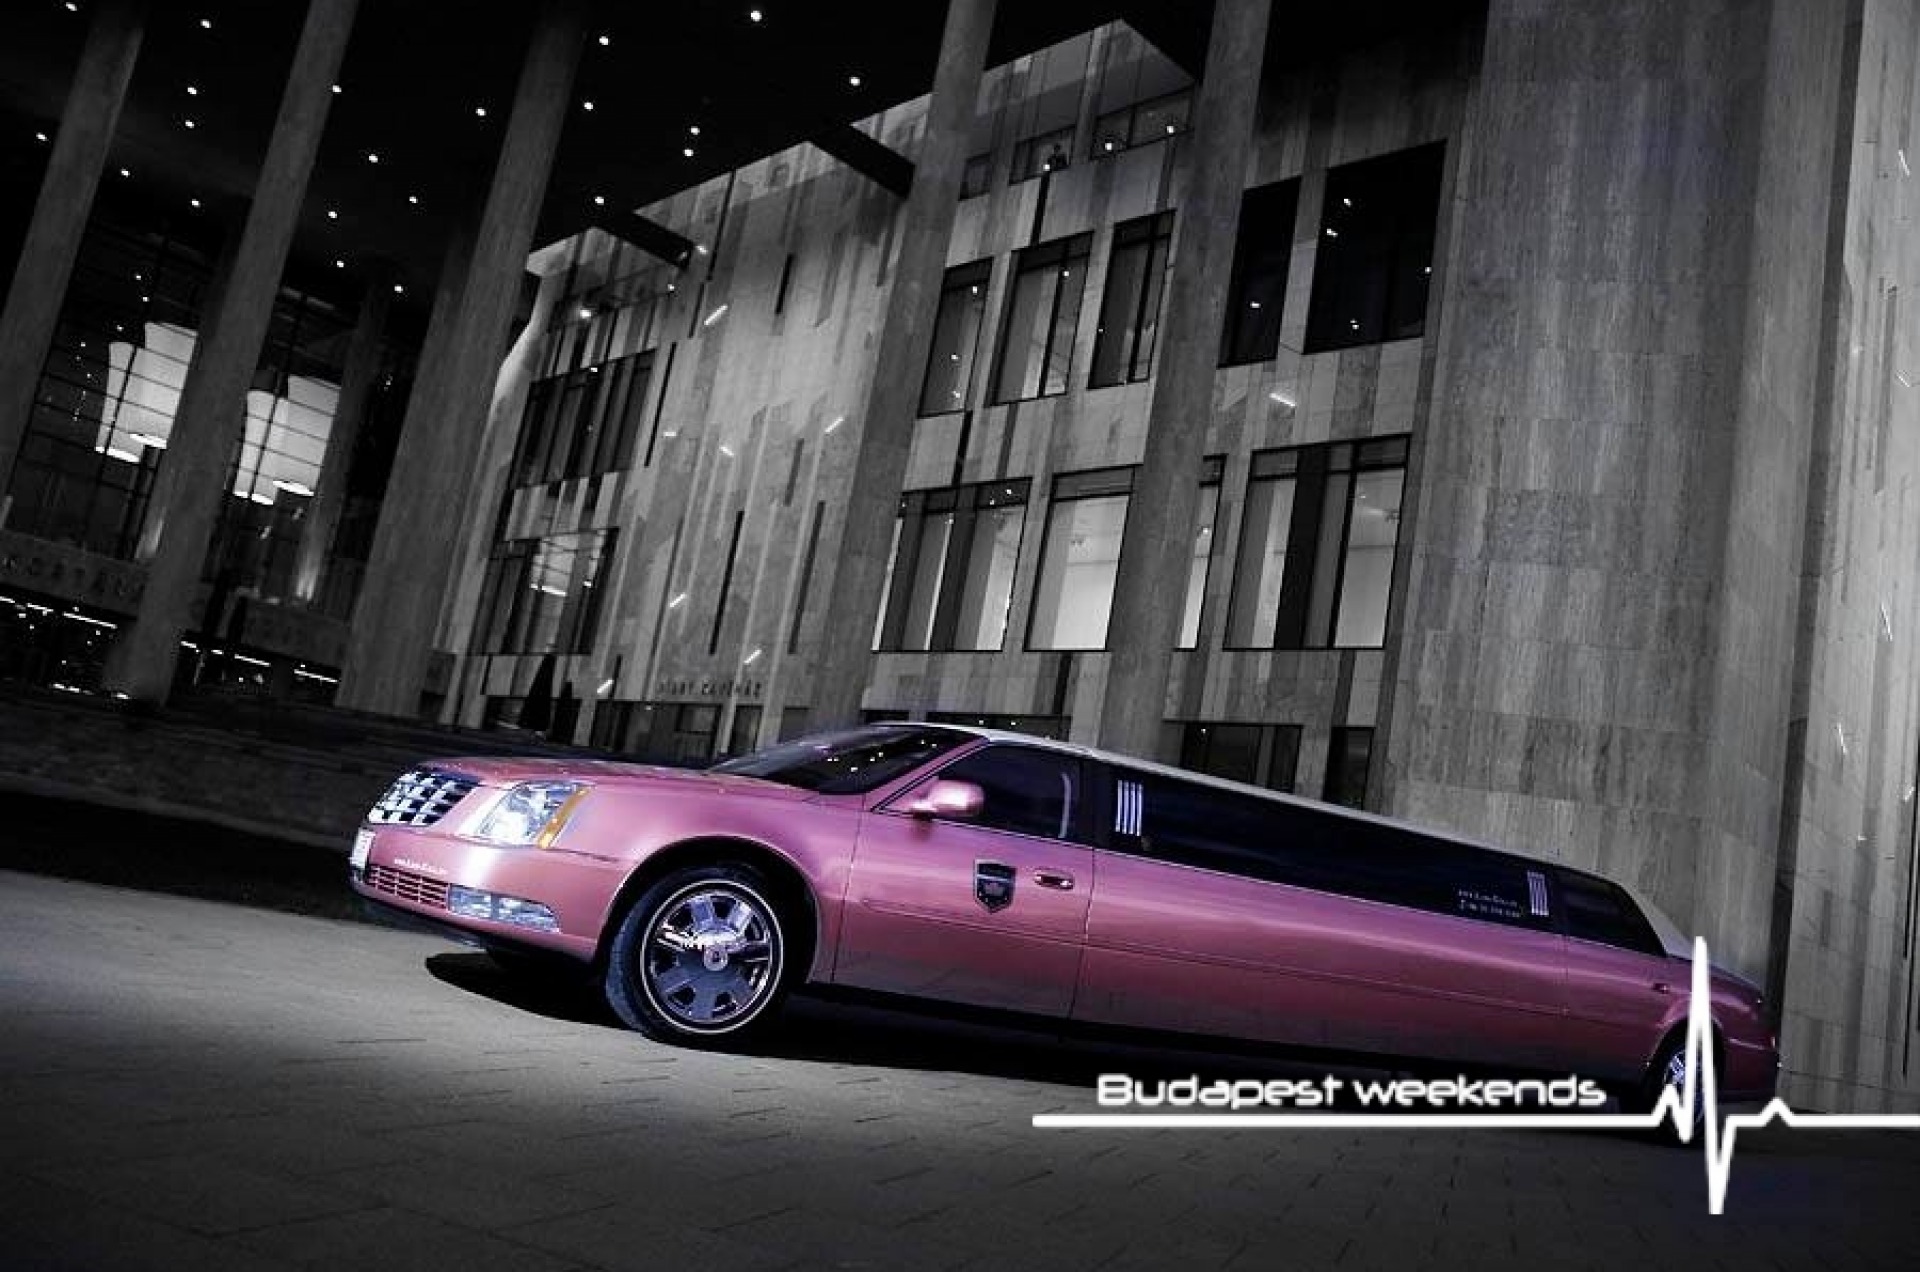 Budapest Pink Limousine für junggesellinen